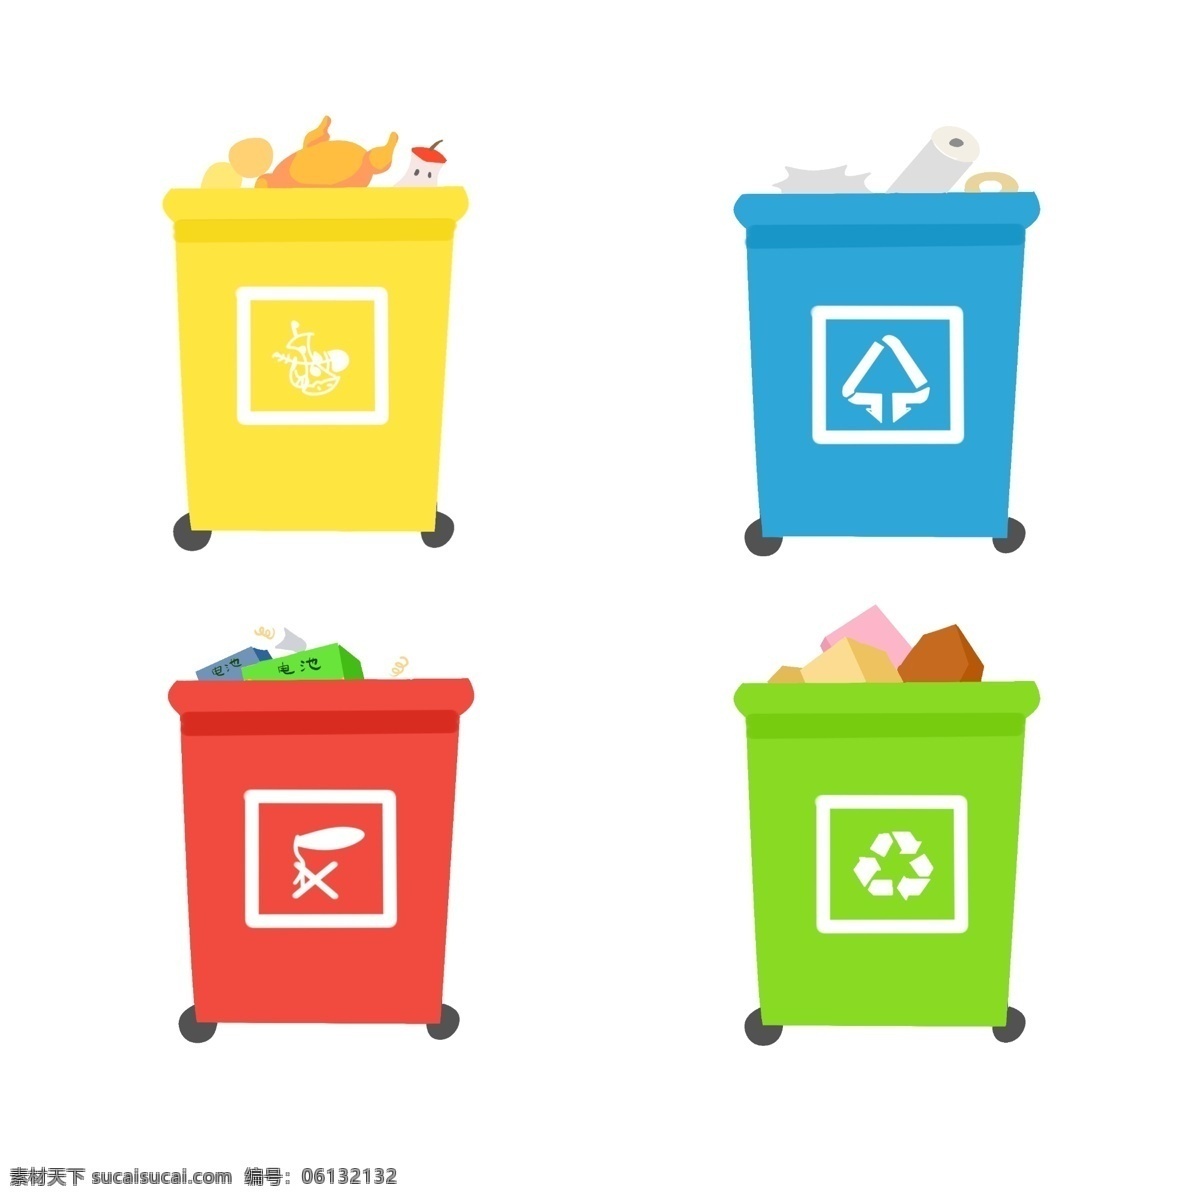 垃圾桶图片 可回收 有害 厨余 垃圾分类 最新垃圾标识 卡通垃圾桶 道具 环保 环境绿色 可爱卡通